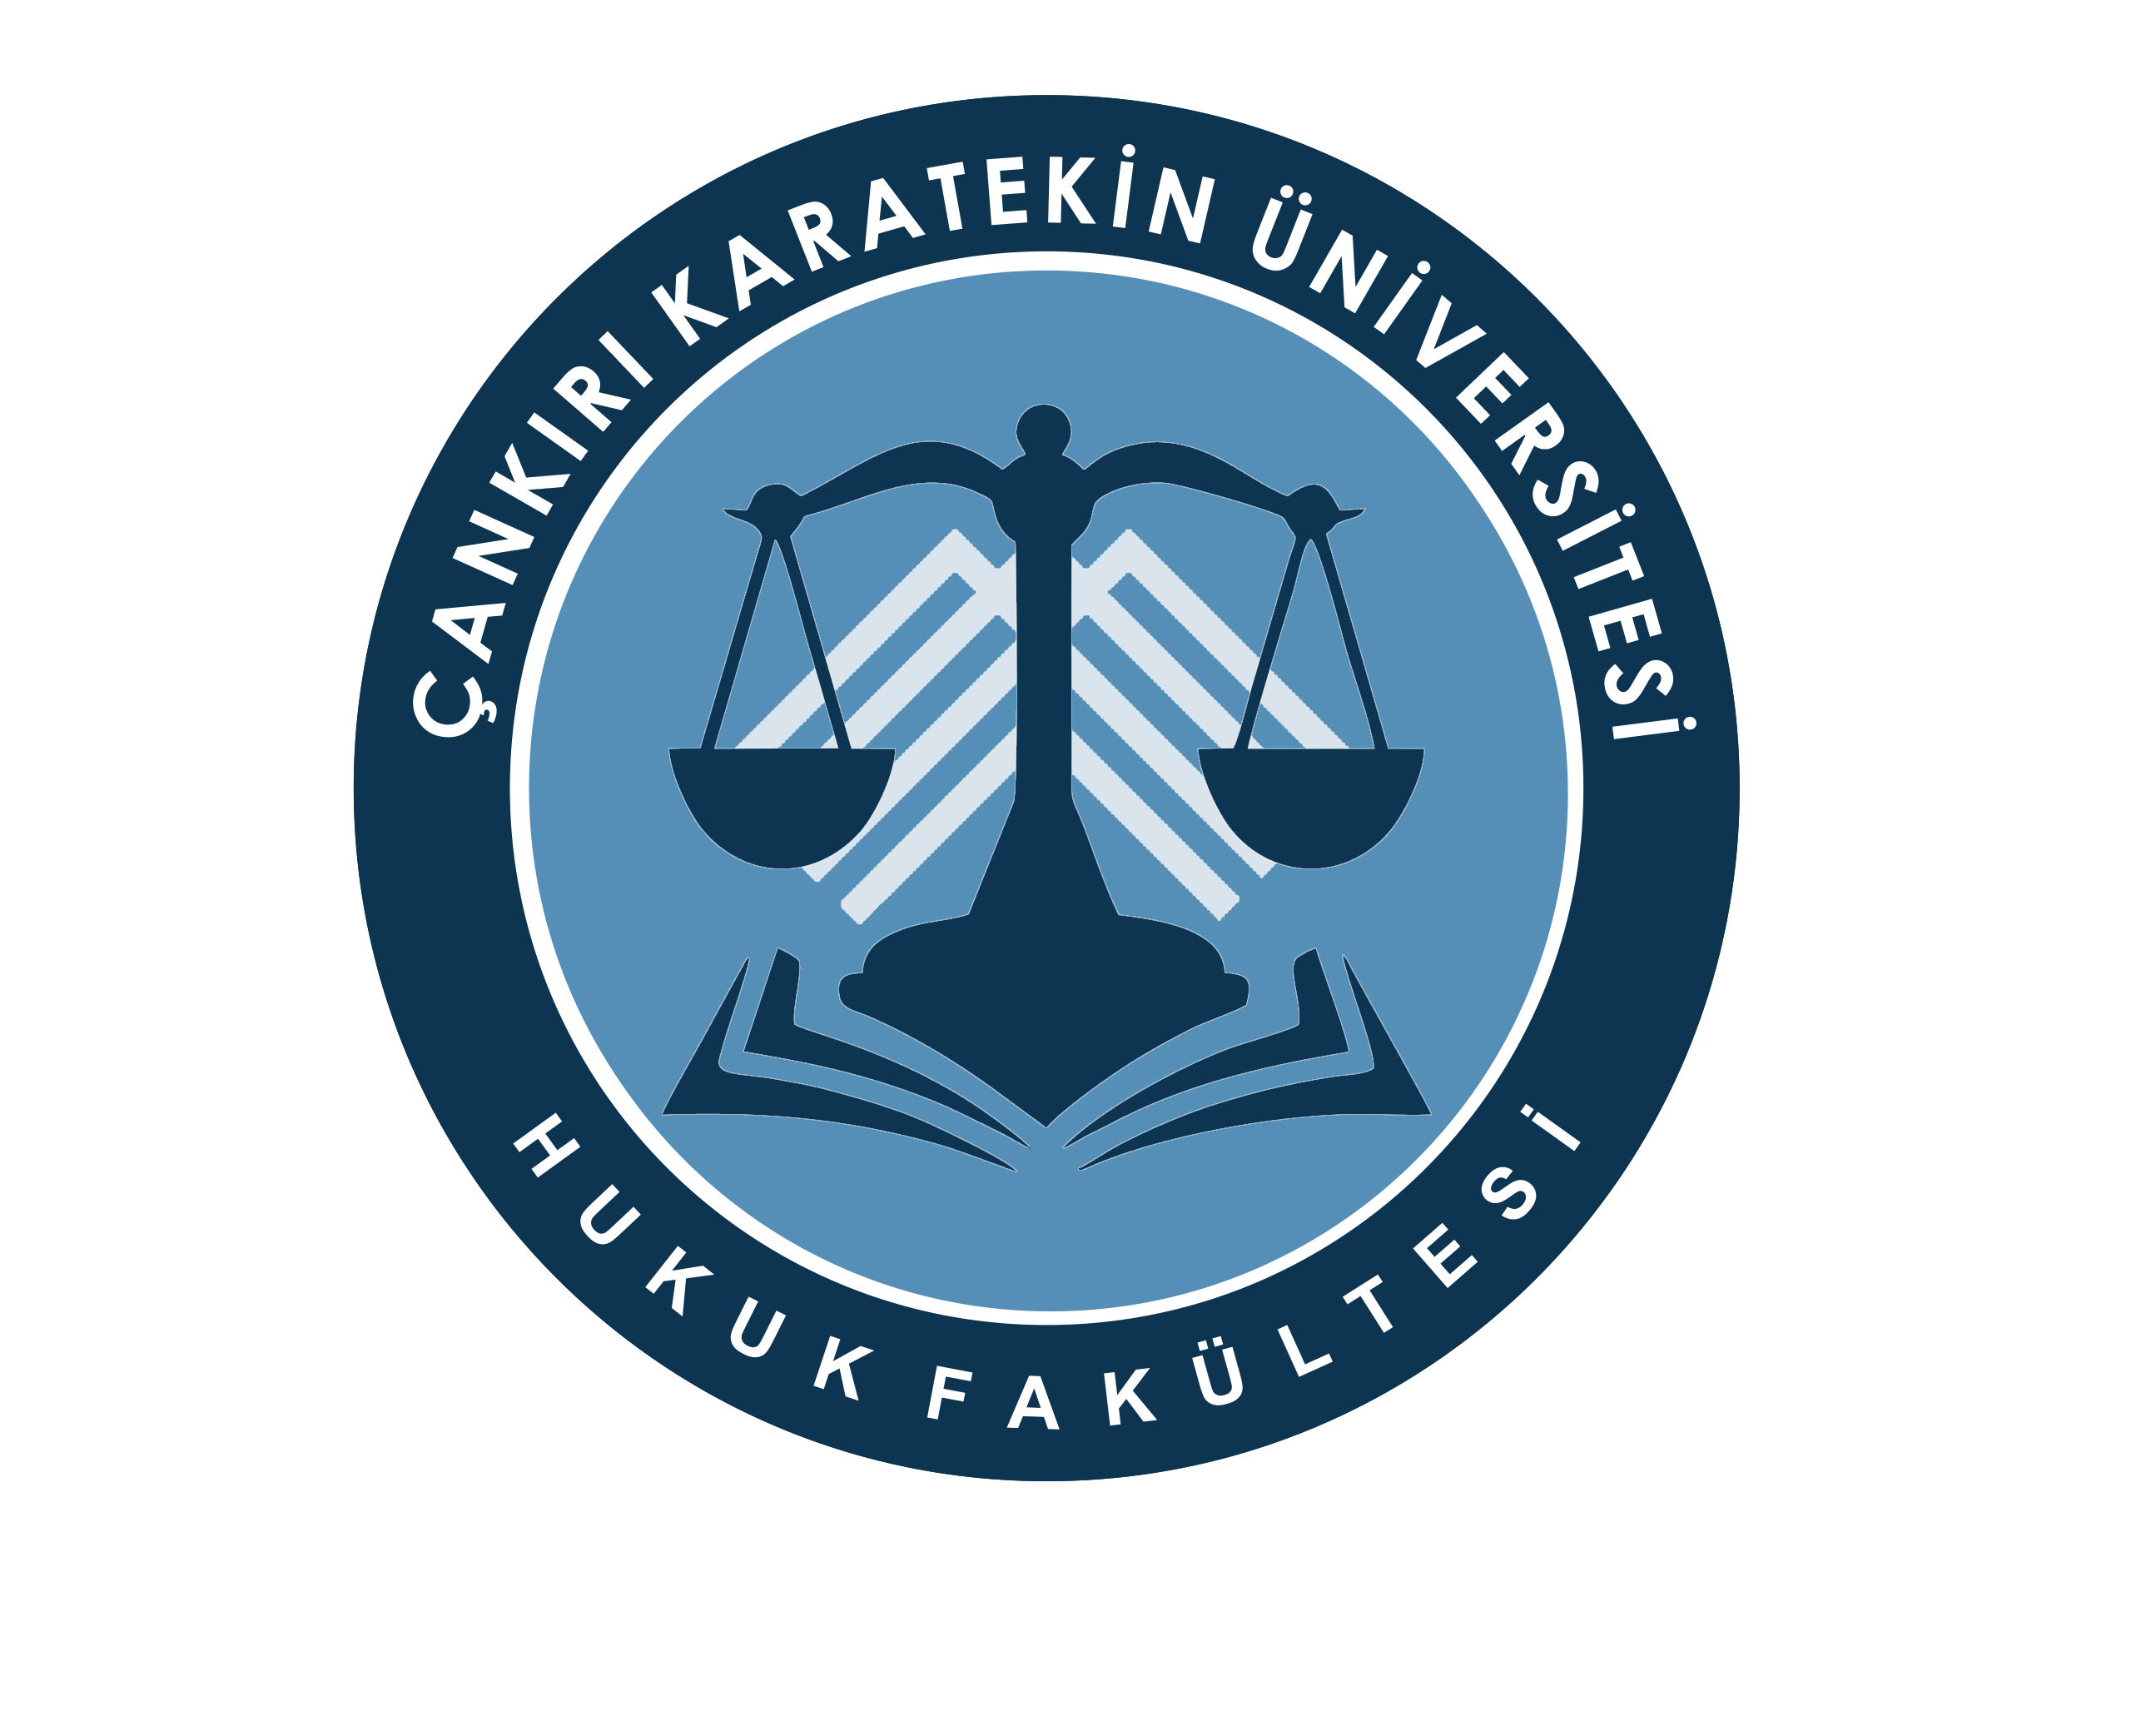 Çankırı Karatekin Üniversitesi Faculty of Law Logosu